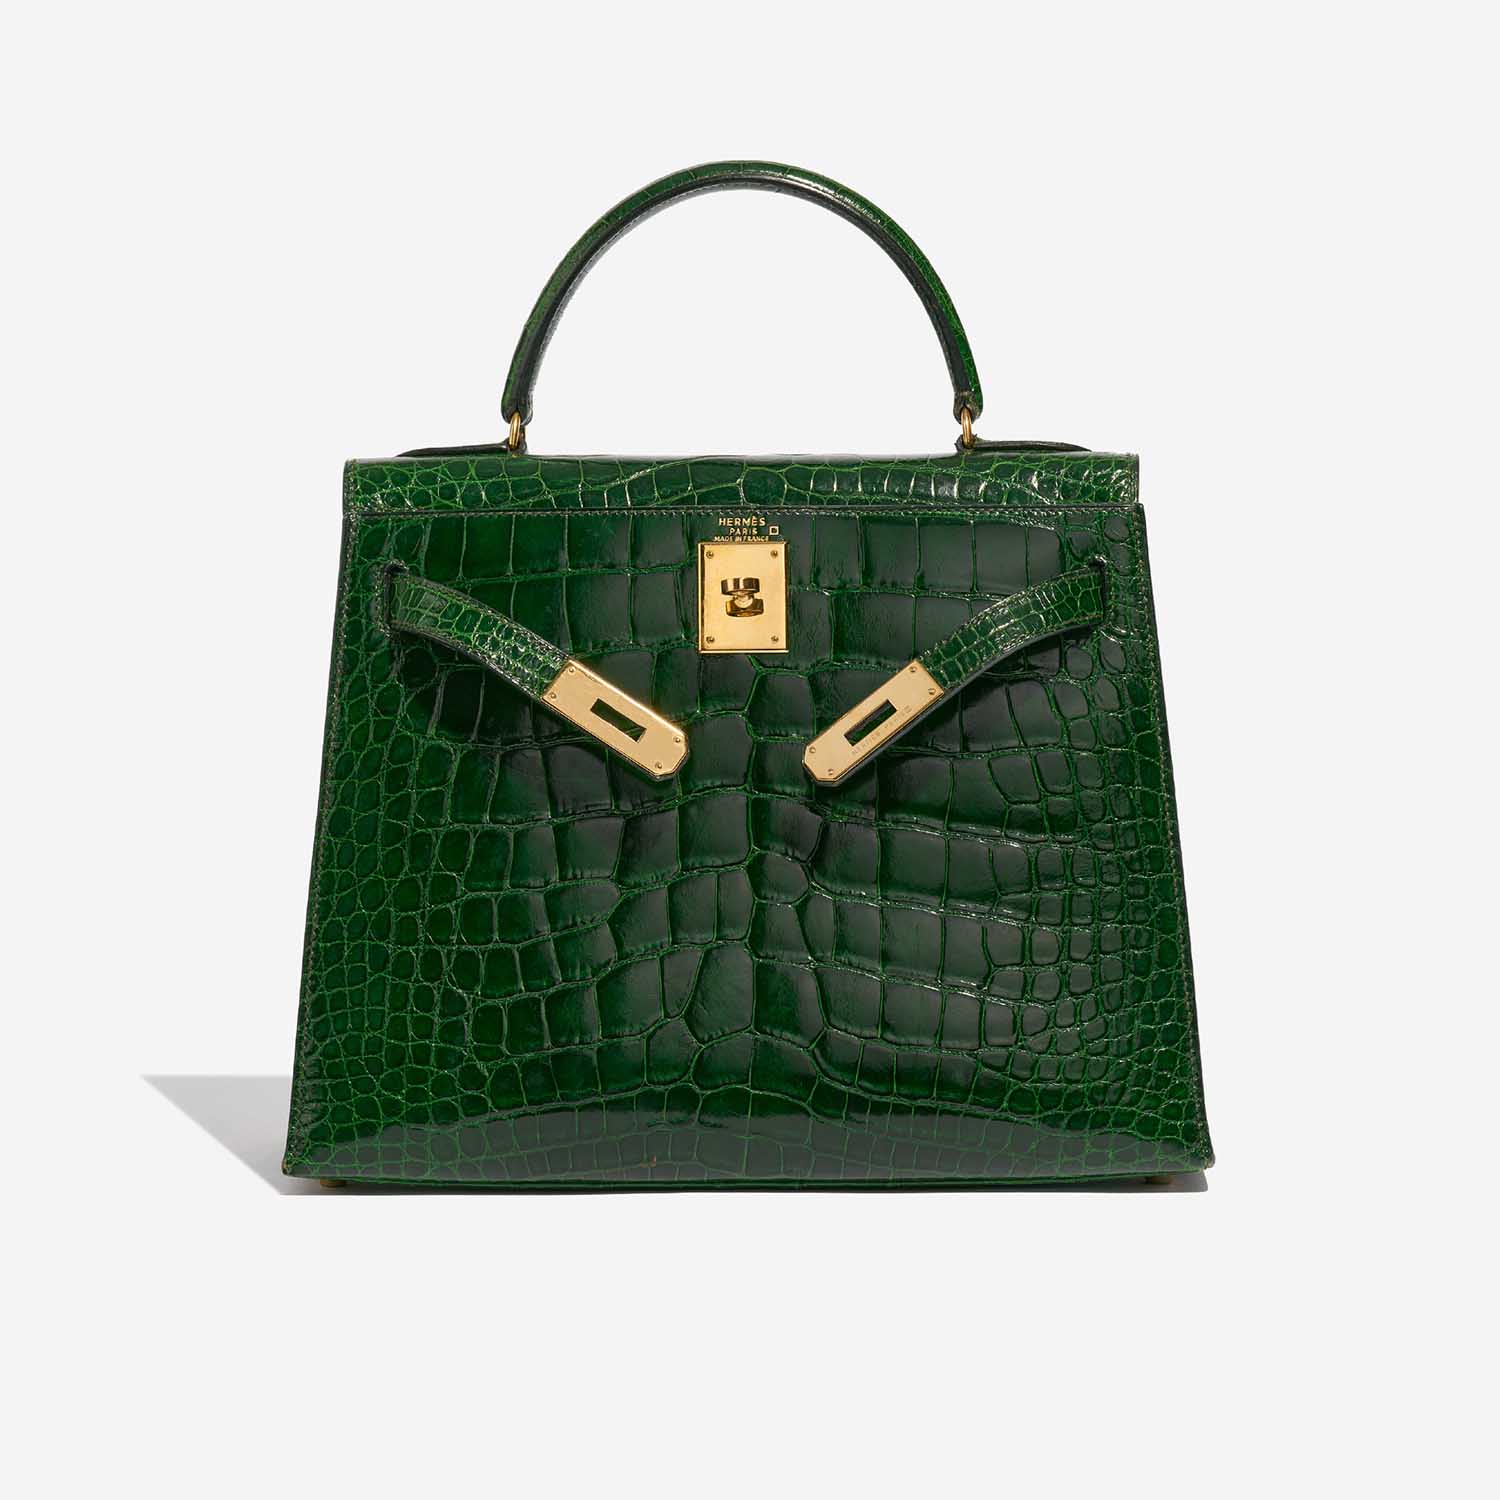 Sac Hermès Kelly 28 Alligator Mississippiensis Vert Emeralde Green Front Open | Vendez votre sac de créateur sur Saclab.com